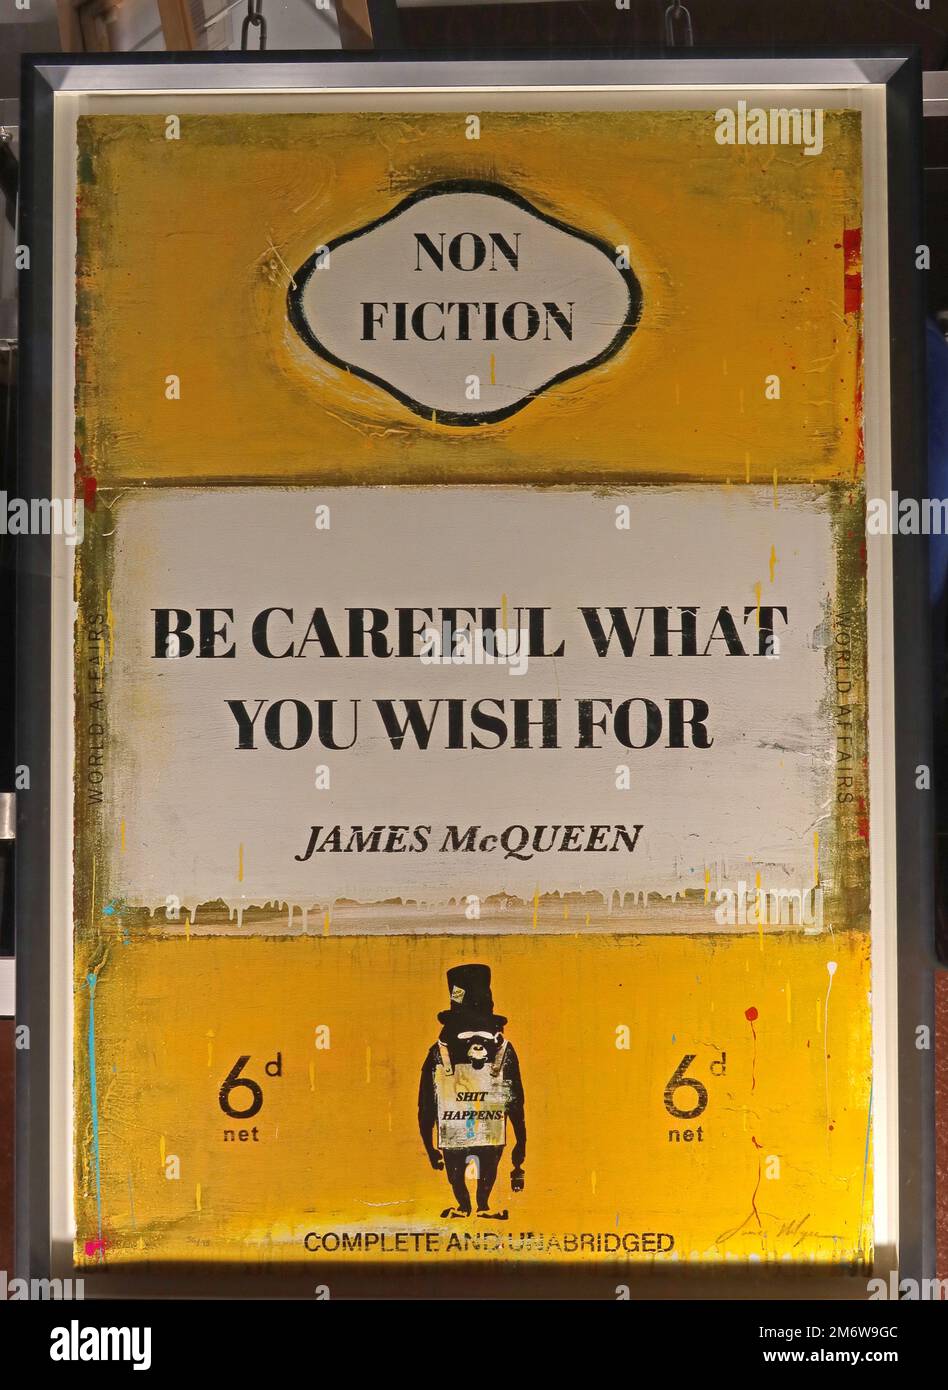 Gelber Bucheinband von James McQueen, sei vorsichtig, was du dir wünschst, 6d, Pinguin, Non-Fiction Stockfoto